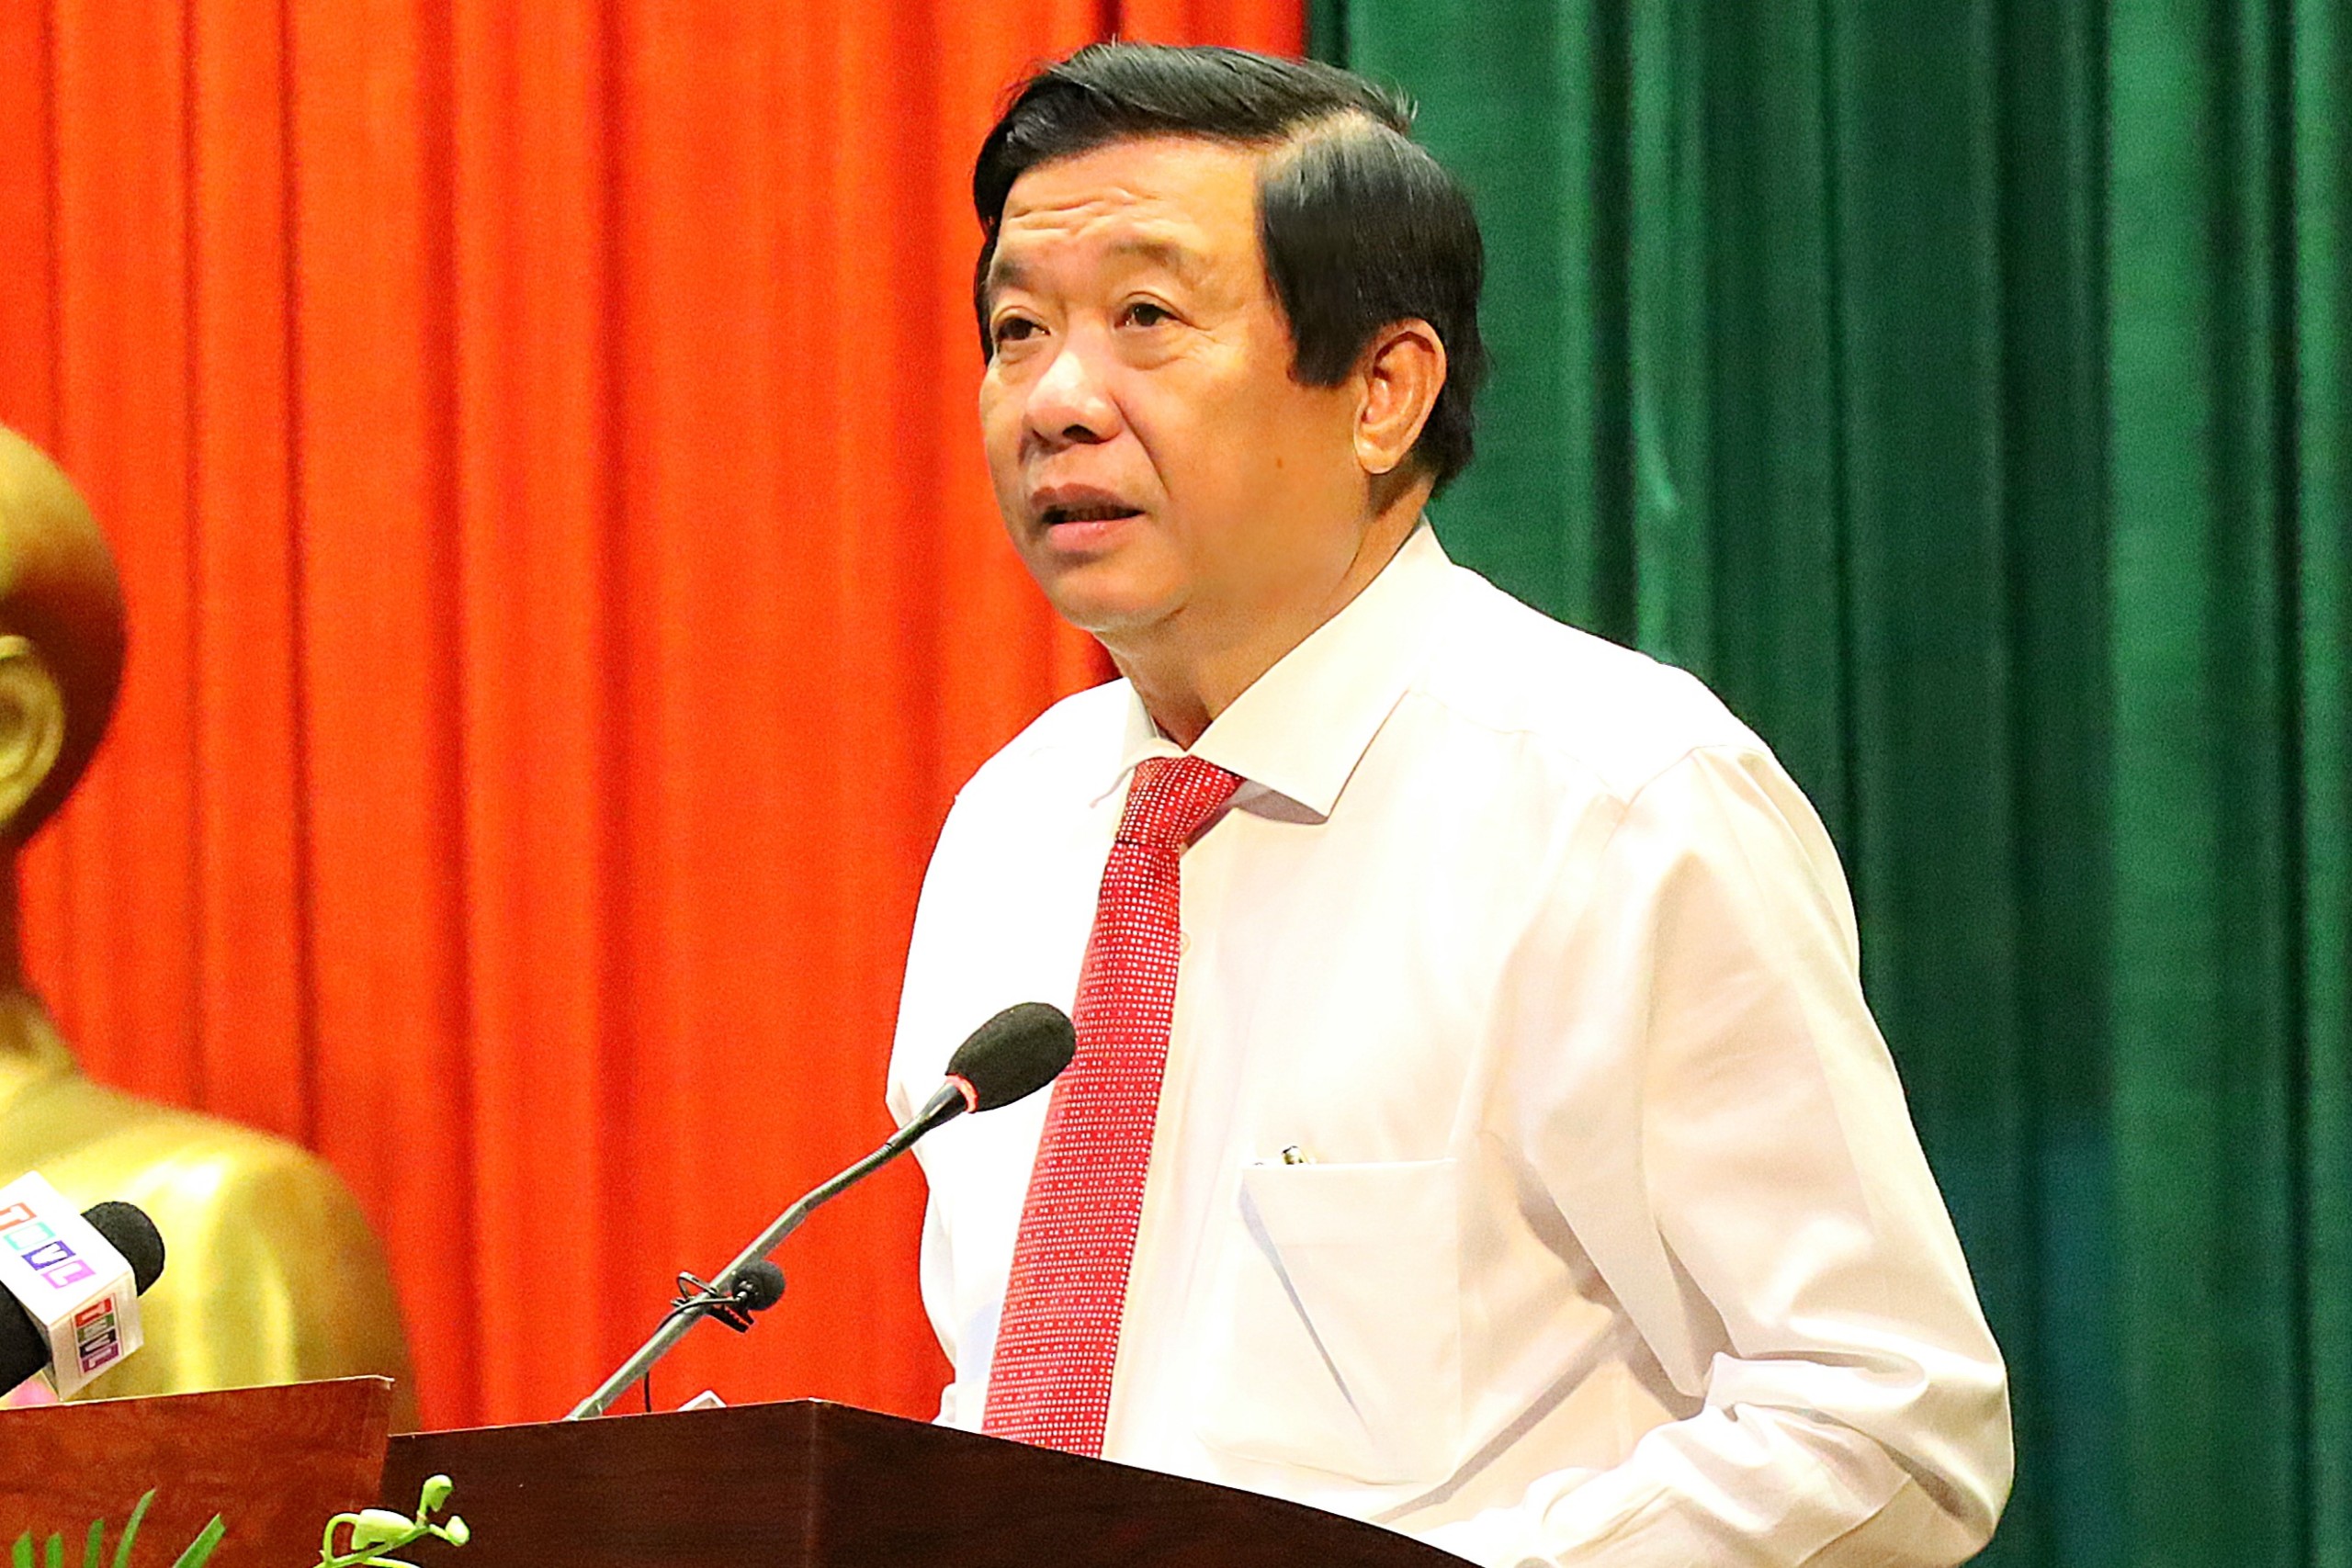 Ông Bùi Văn Nghiêm - UV Trung ương Đảng, Bí thư Tỉnh ủy, Chủ tịch HĐND tỉnh Vĩnh Long phát biểu chỉ đạo tại buổi họp mặt.